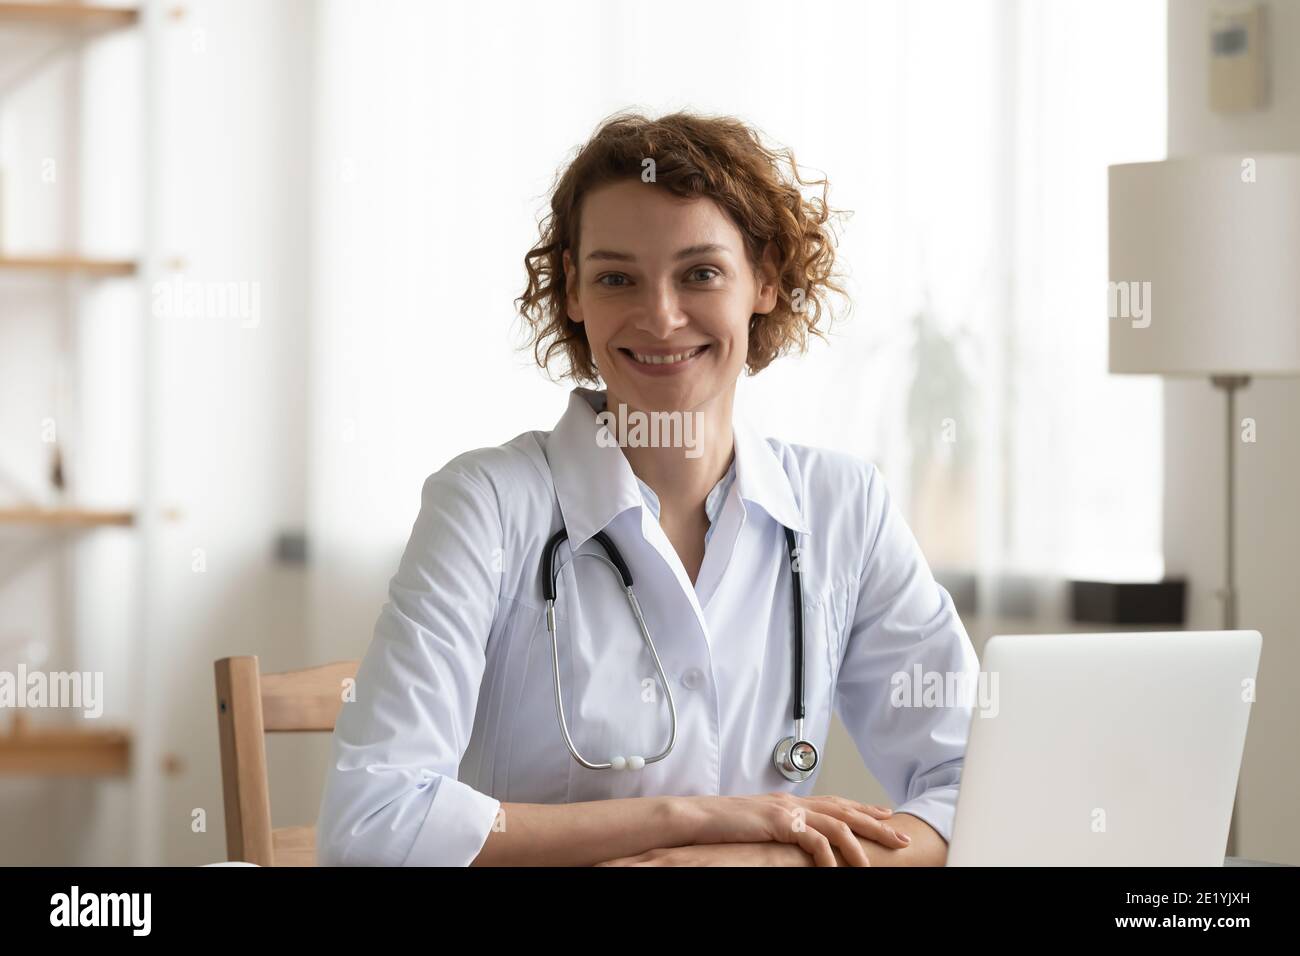 Porträt eines lächelnden attraktiven vertrauten jungen weiblichen Hausarztes. Stockfoto